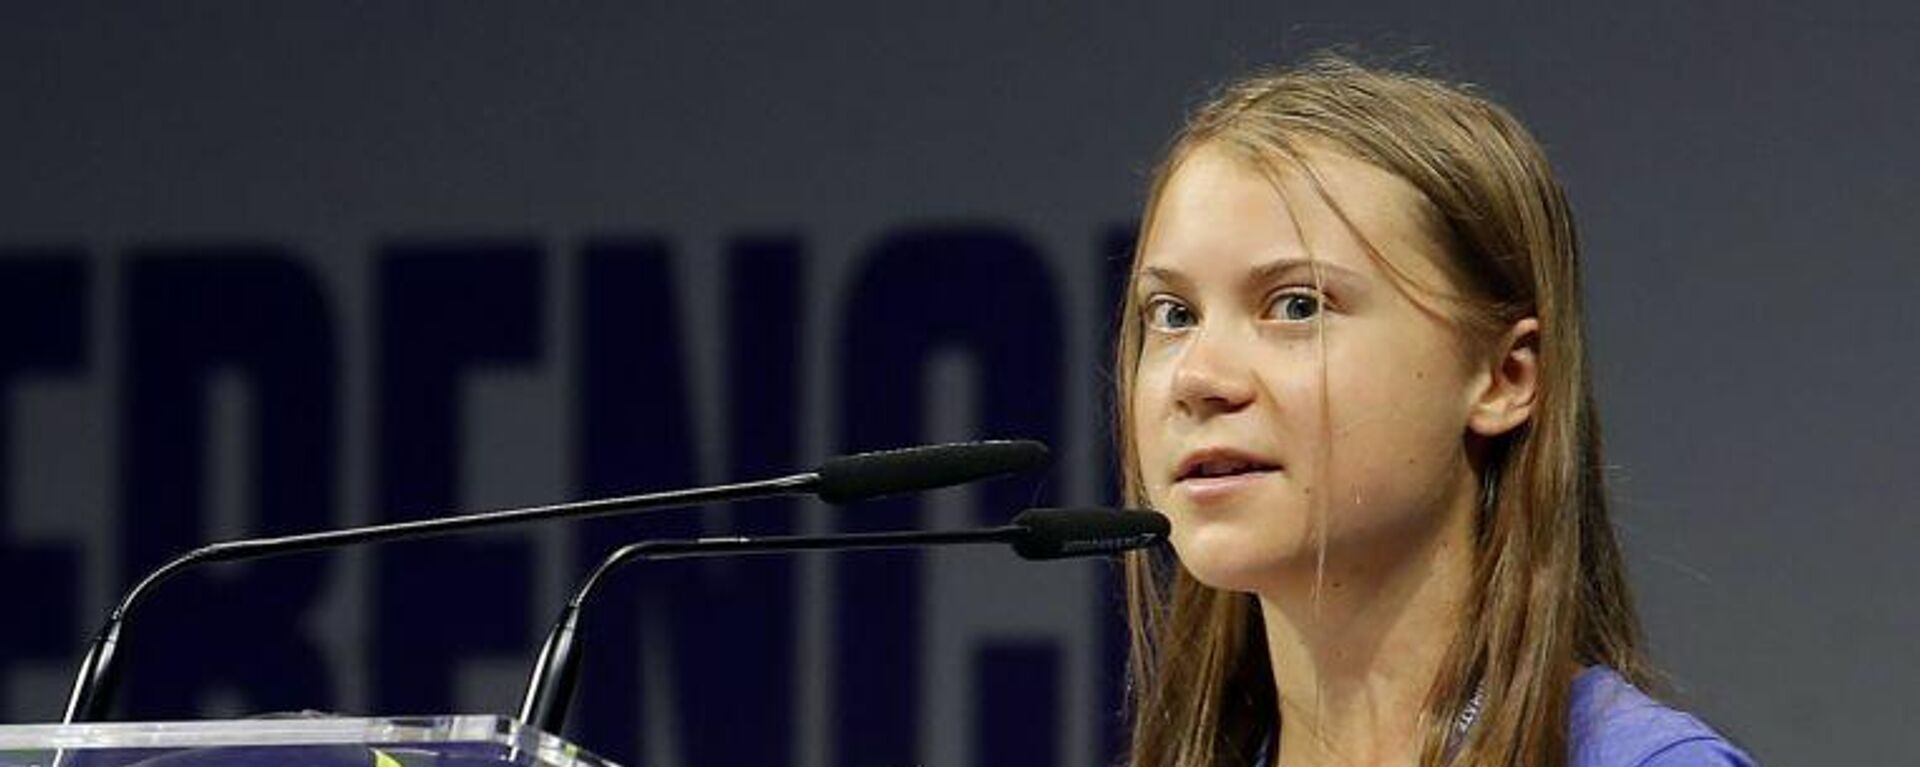 Çevre aktivisti Greta Thunberg, dünya liderlerini 'boş vaatler vermekle' suçladı - Sputnik Türkiye, 1920, 19.10.2021